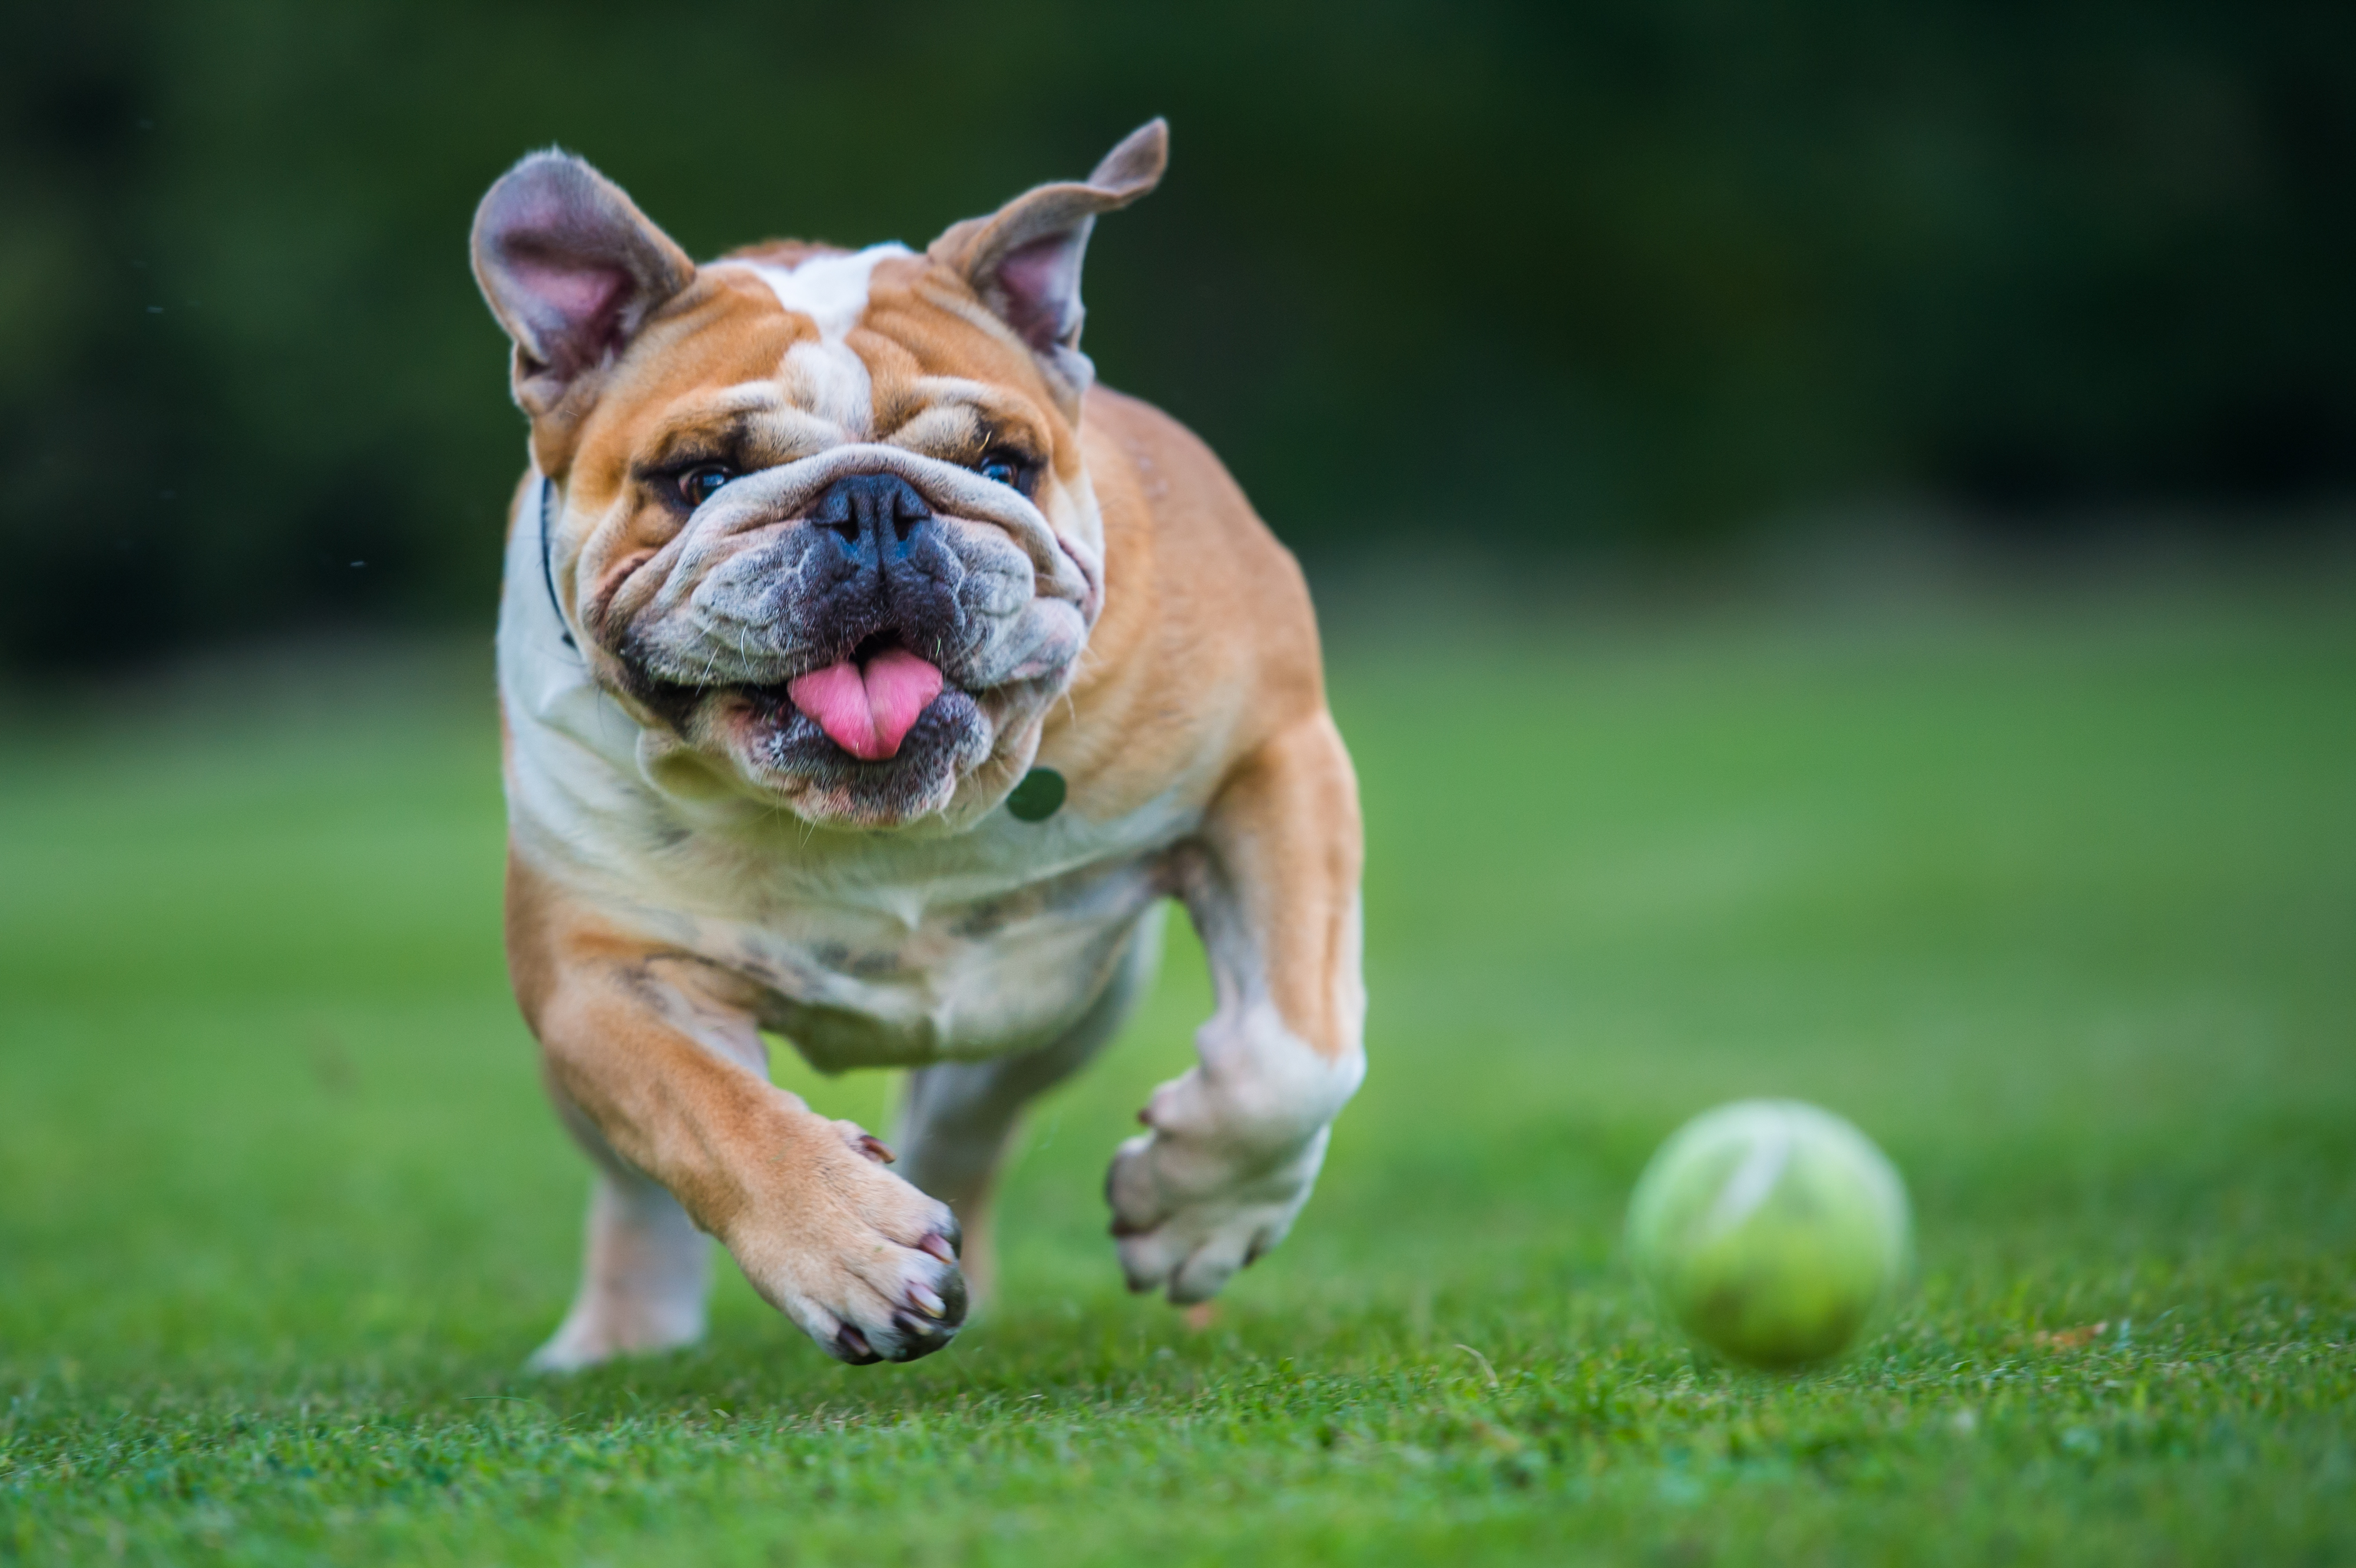 Der Hundeexperte sagt, er würde niemals eine brachyzephale Hunderasse wie die Englische Bulldogge besitzen